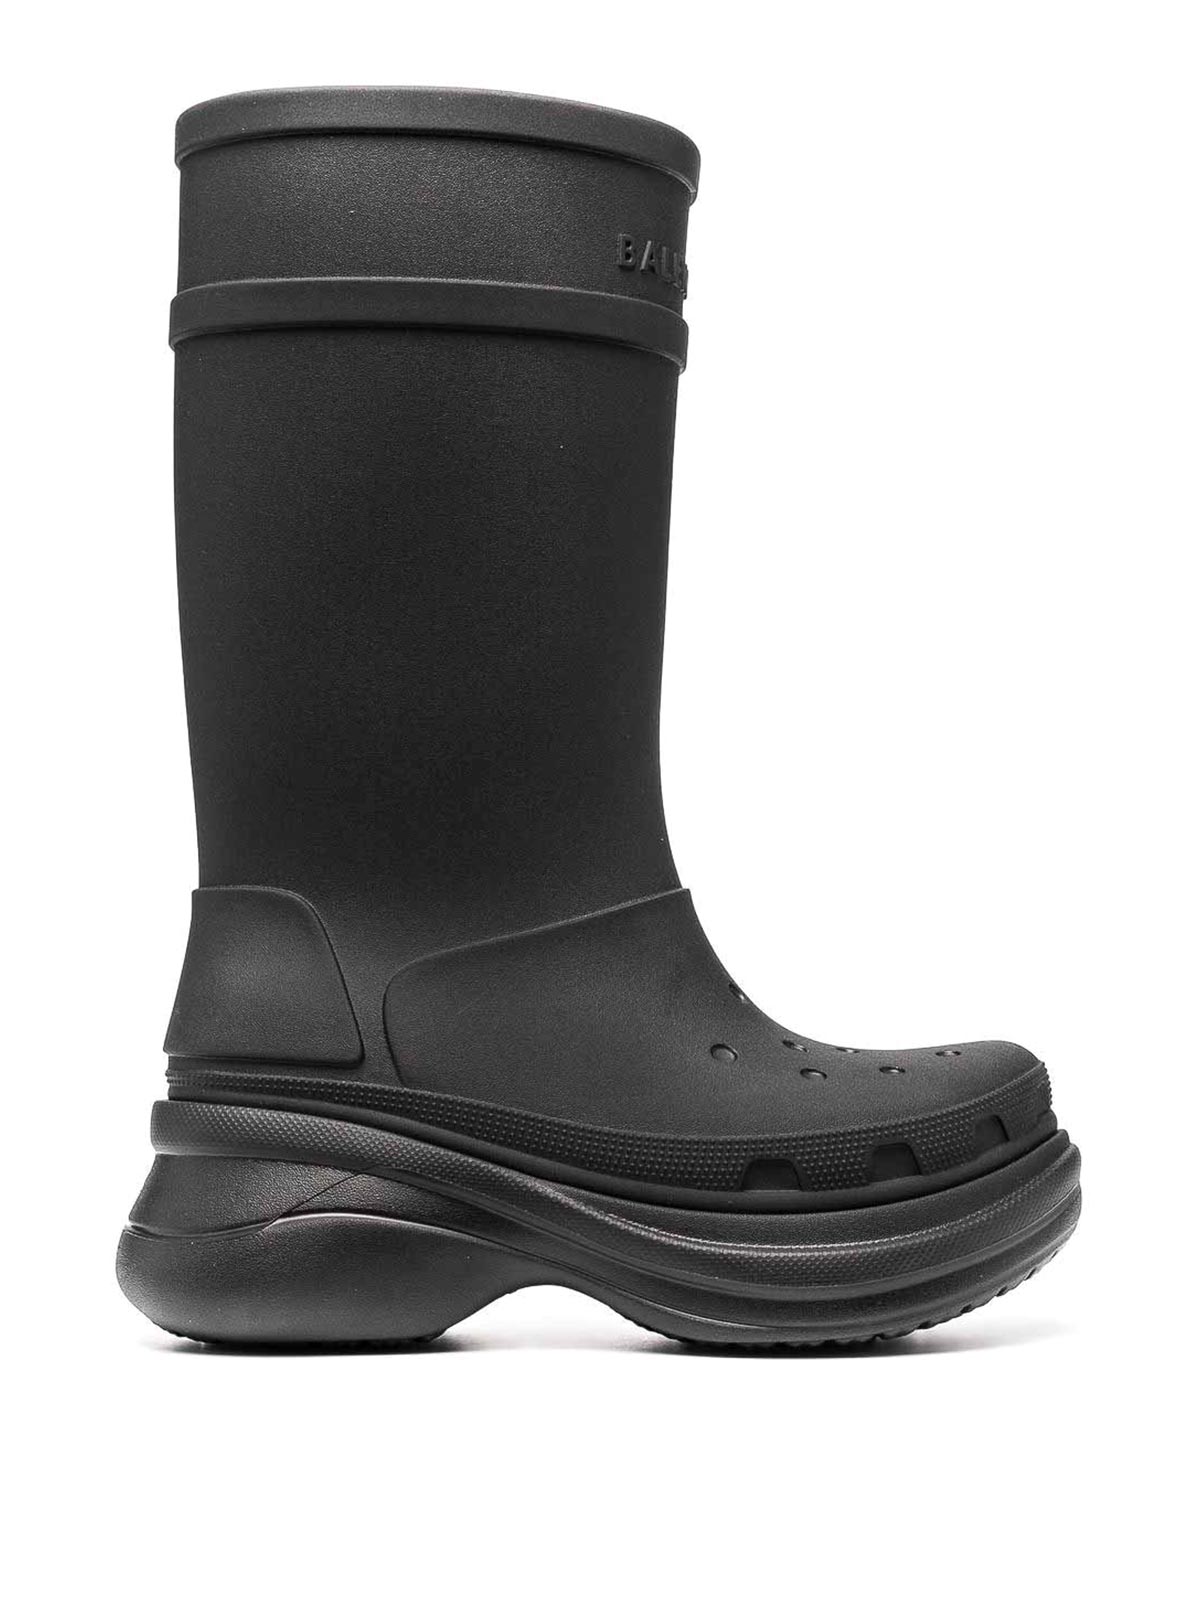 Boots Balenciaga - Crocs boots - 677384W1S8E1000 | thebs.com [ikrix.com]